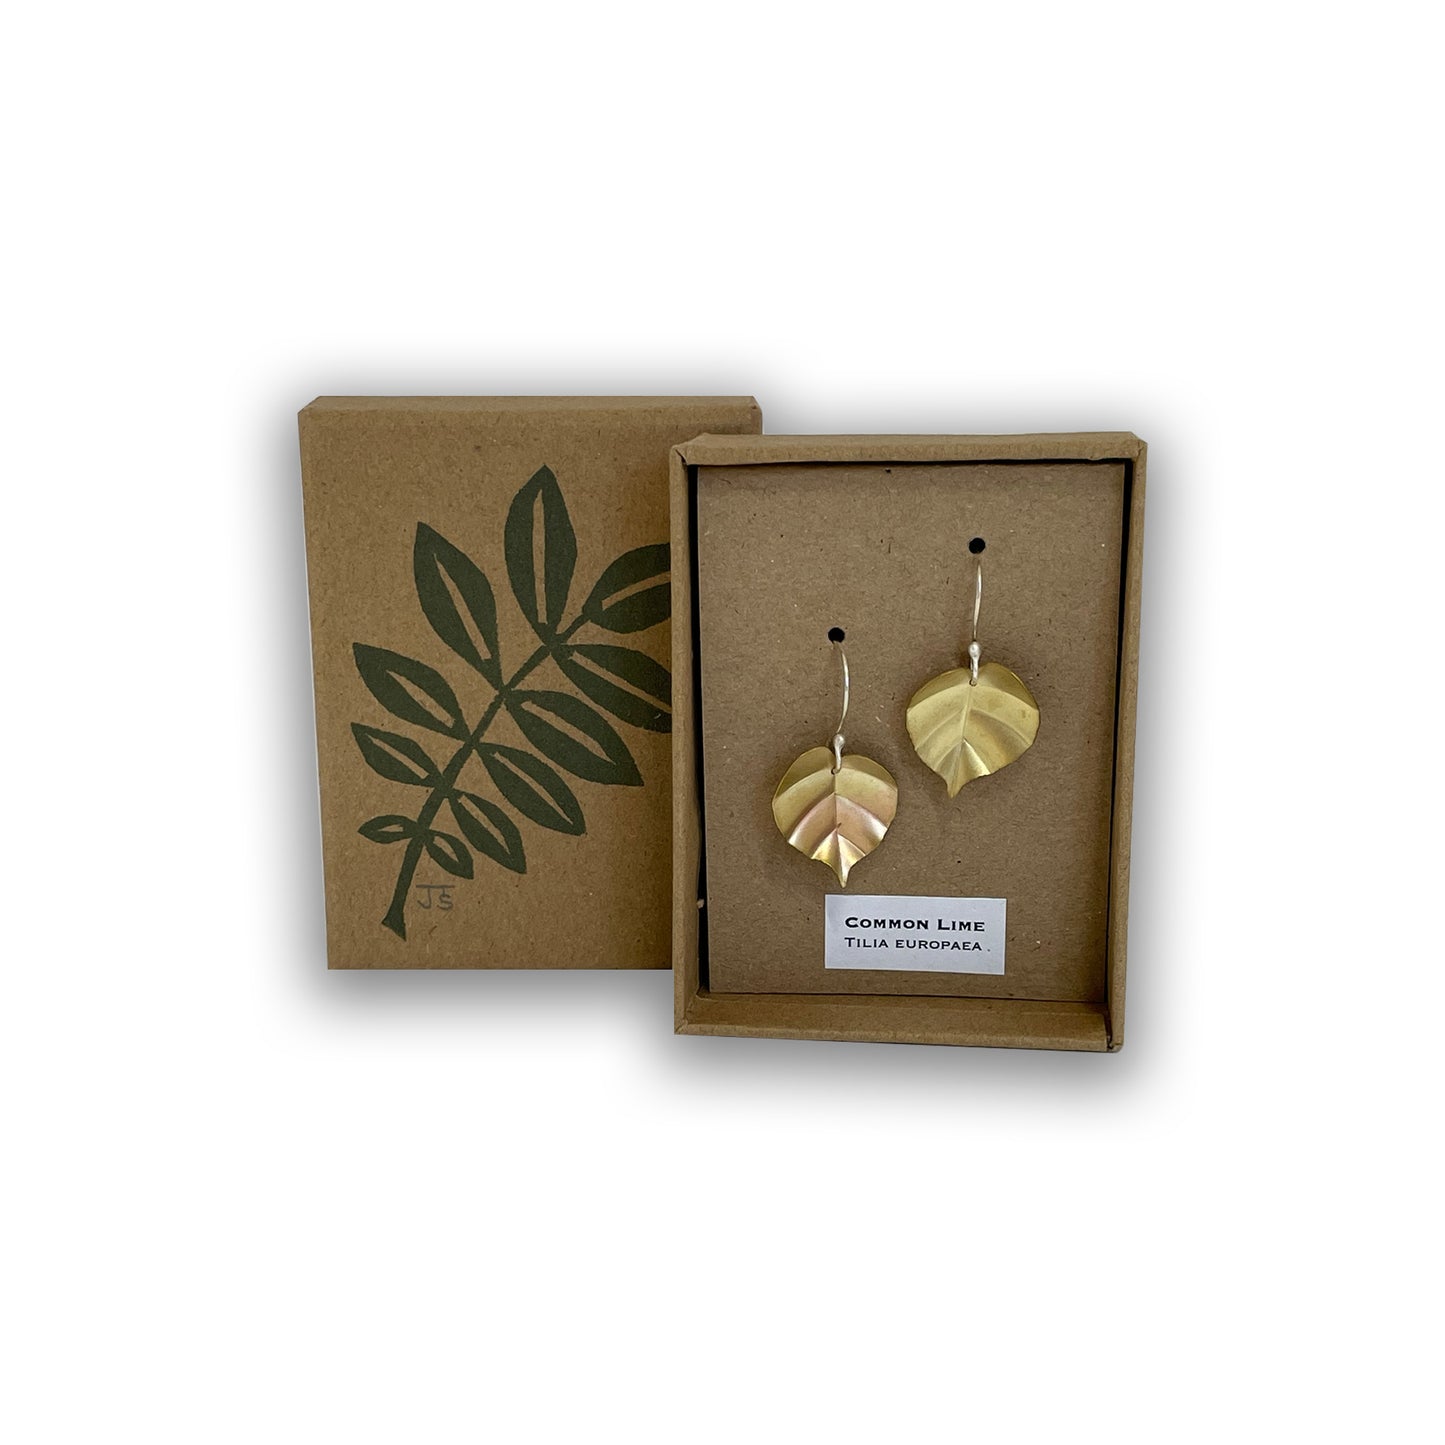 Lime tree leaf earrings in box.